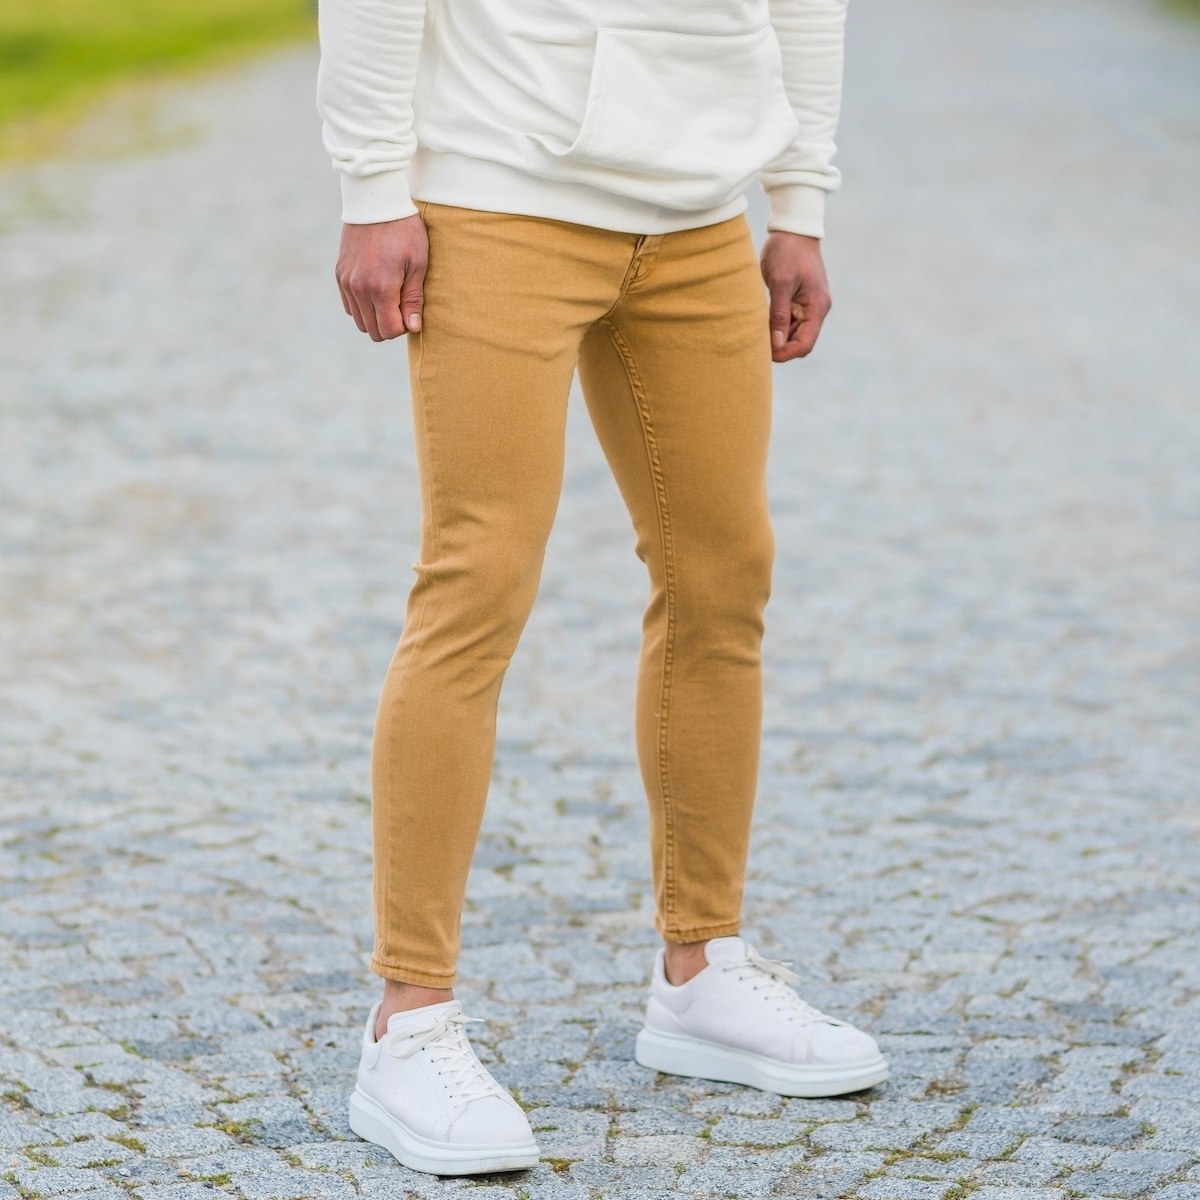 Men's Basic Skinny Jeans In Mustard - 3